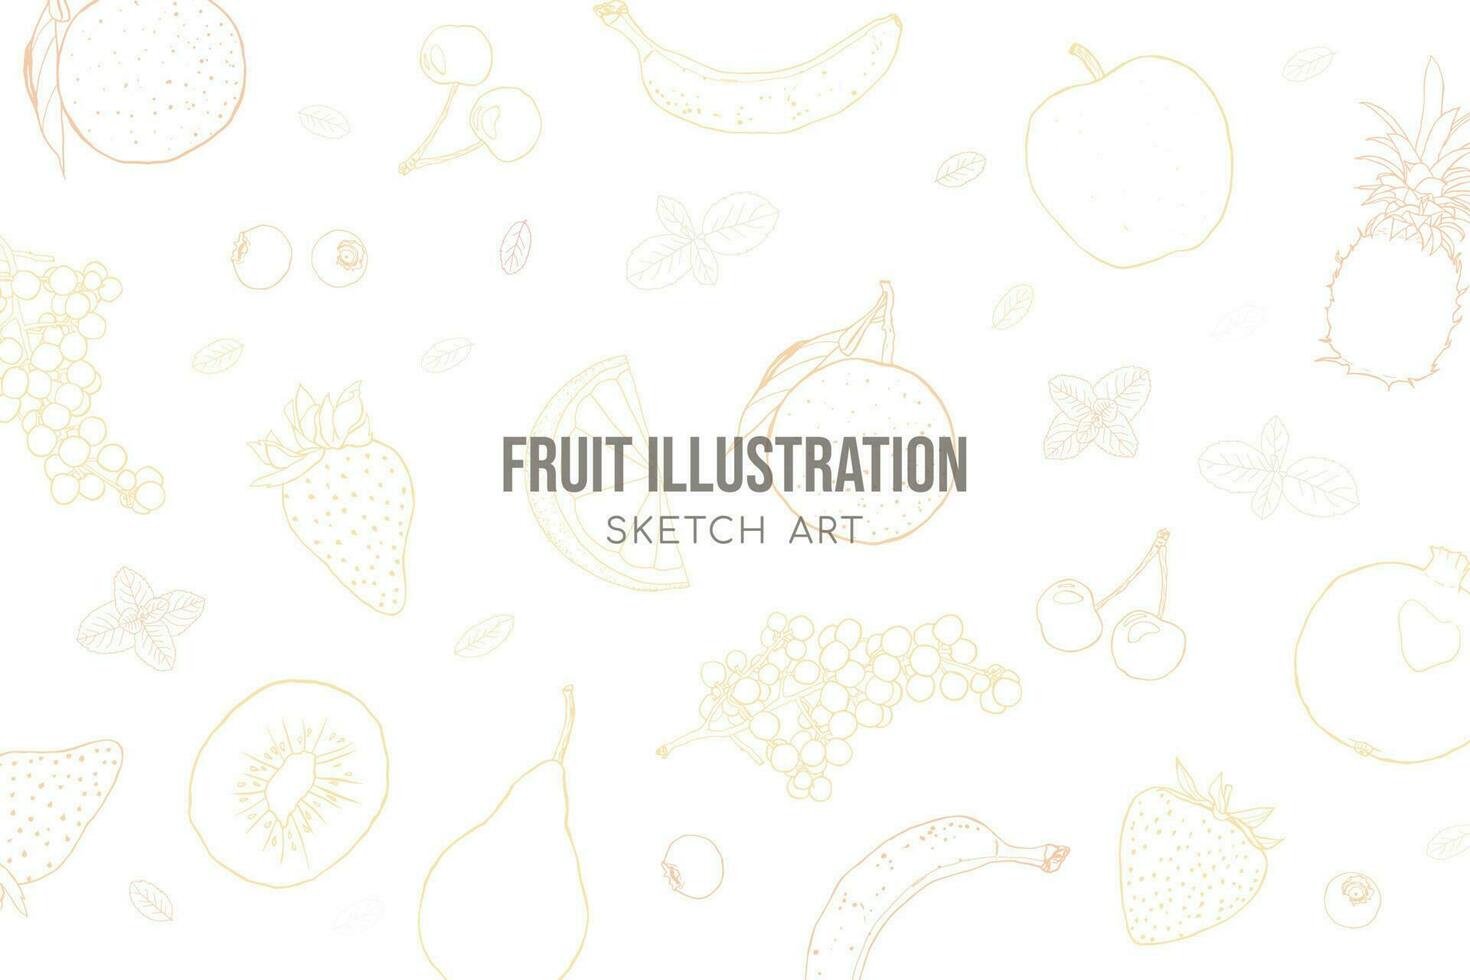 Fruit illustration sketch art neutral beige background vector